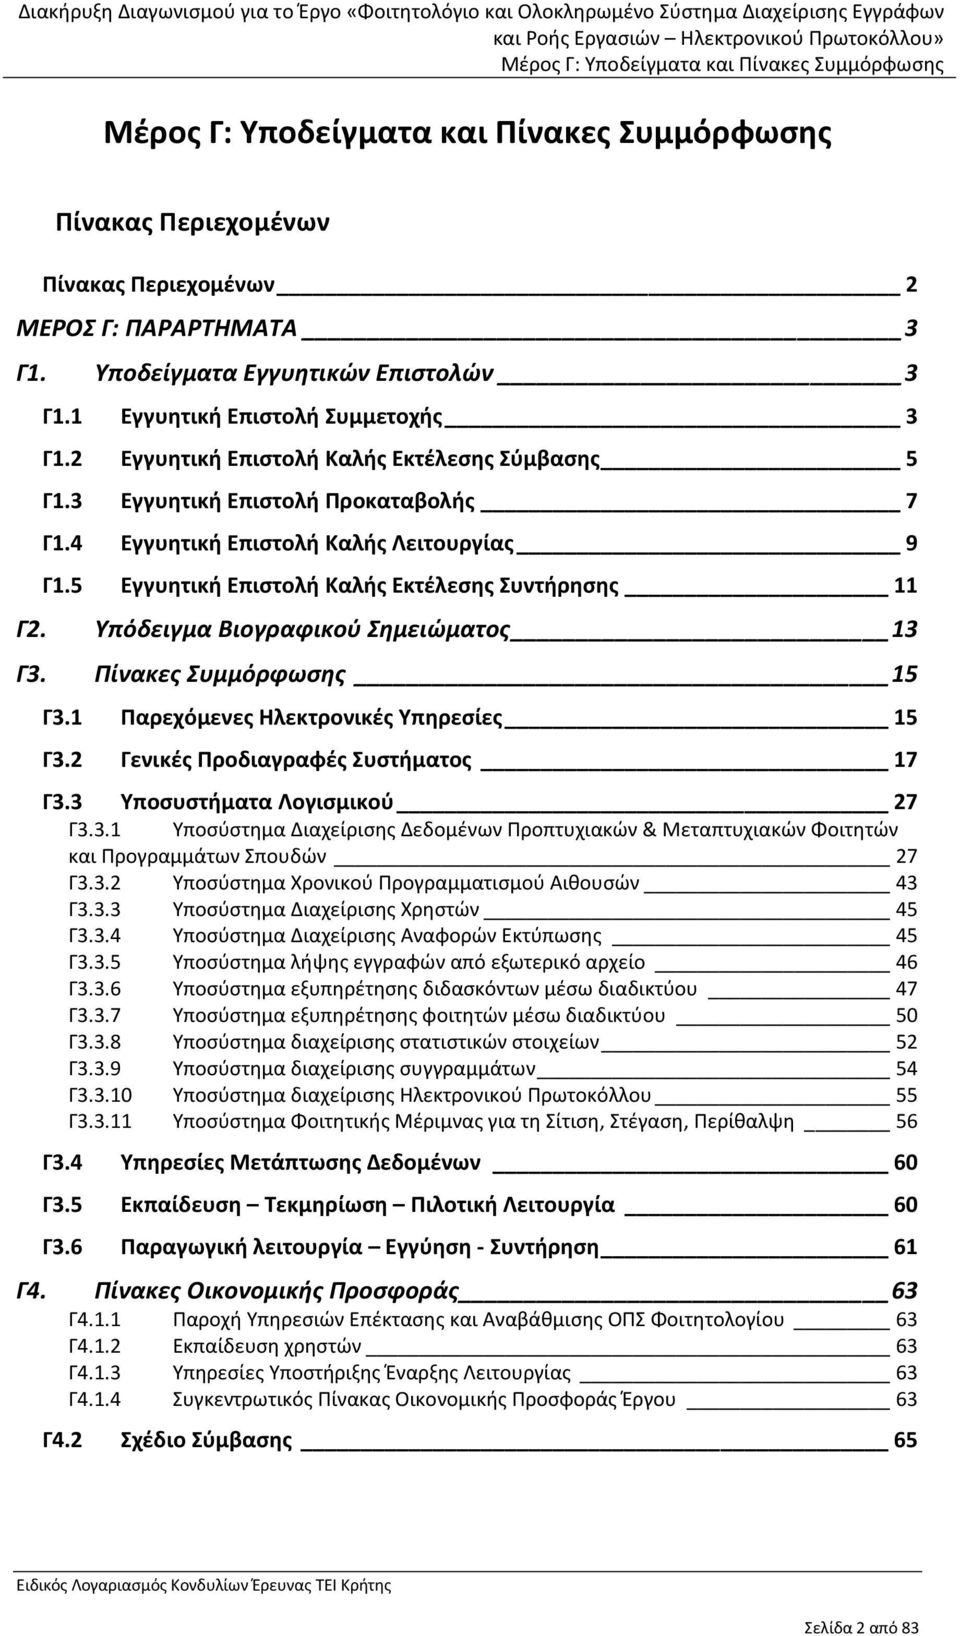 Πίνακες Συμμόρφωσης 15 Γ3.1 Παρεχόμενες Ηλεκτρονικές Υπηρεσίες 15 Γ3.2 Γενικές Προδιαγραφές Συστήματος 17 Γ3.3 Υποσυστήματα Λογισμικού 27 Γ3.3.1 Υποσύστημα Διαχείρισης Δεδομένων Προπτυχιακών & Μεταπτυχιακών Φοιτητών και Προγραμμάτων Σπουδών 27 Γ3.